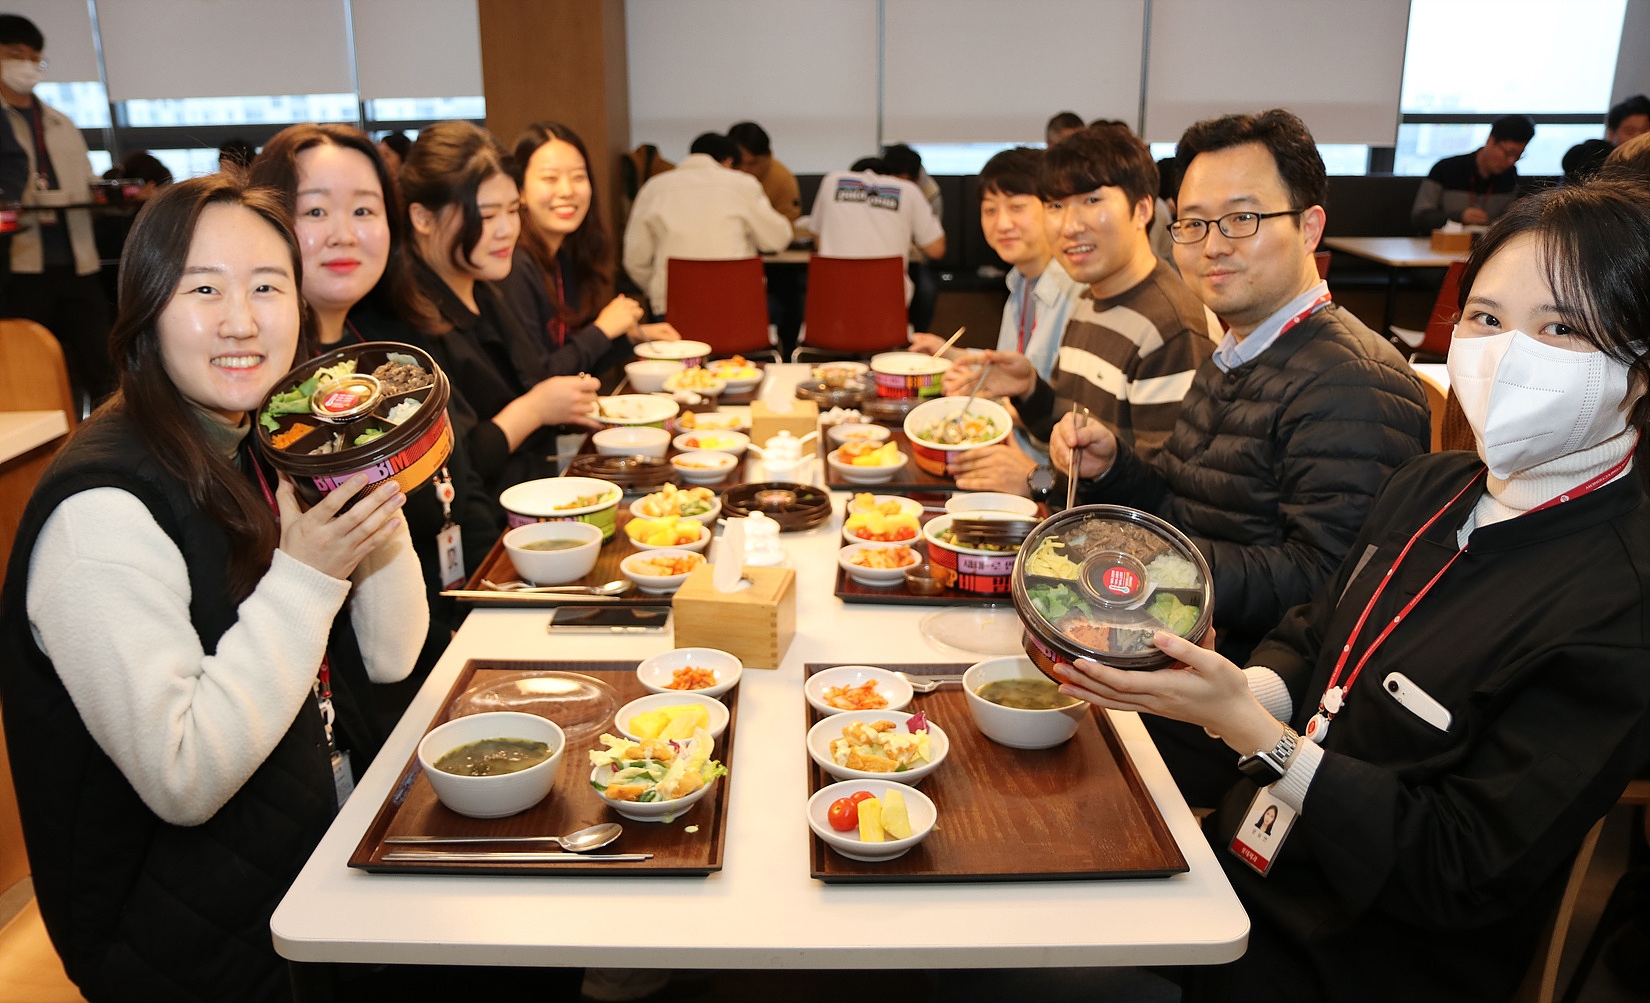 주현영 비빔밥 도시락 100만개 판매기념 도시락데이 이벤트./ 사진 = 롯데웰푸드